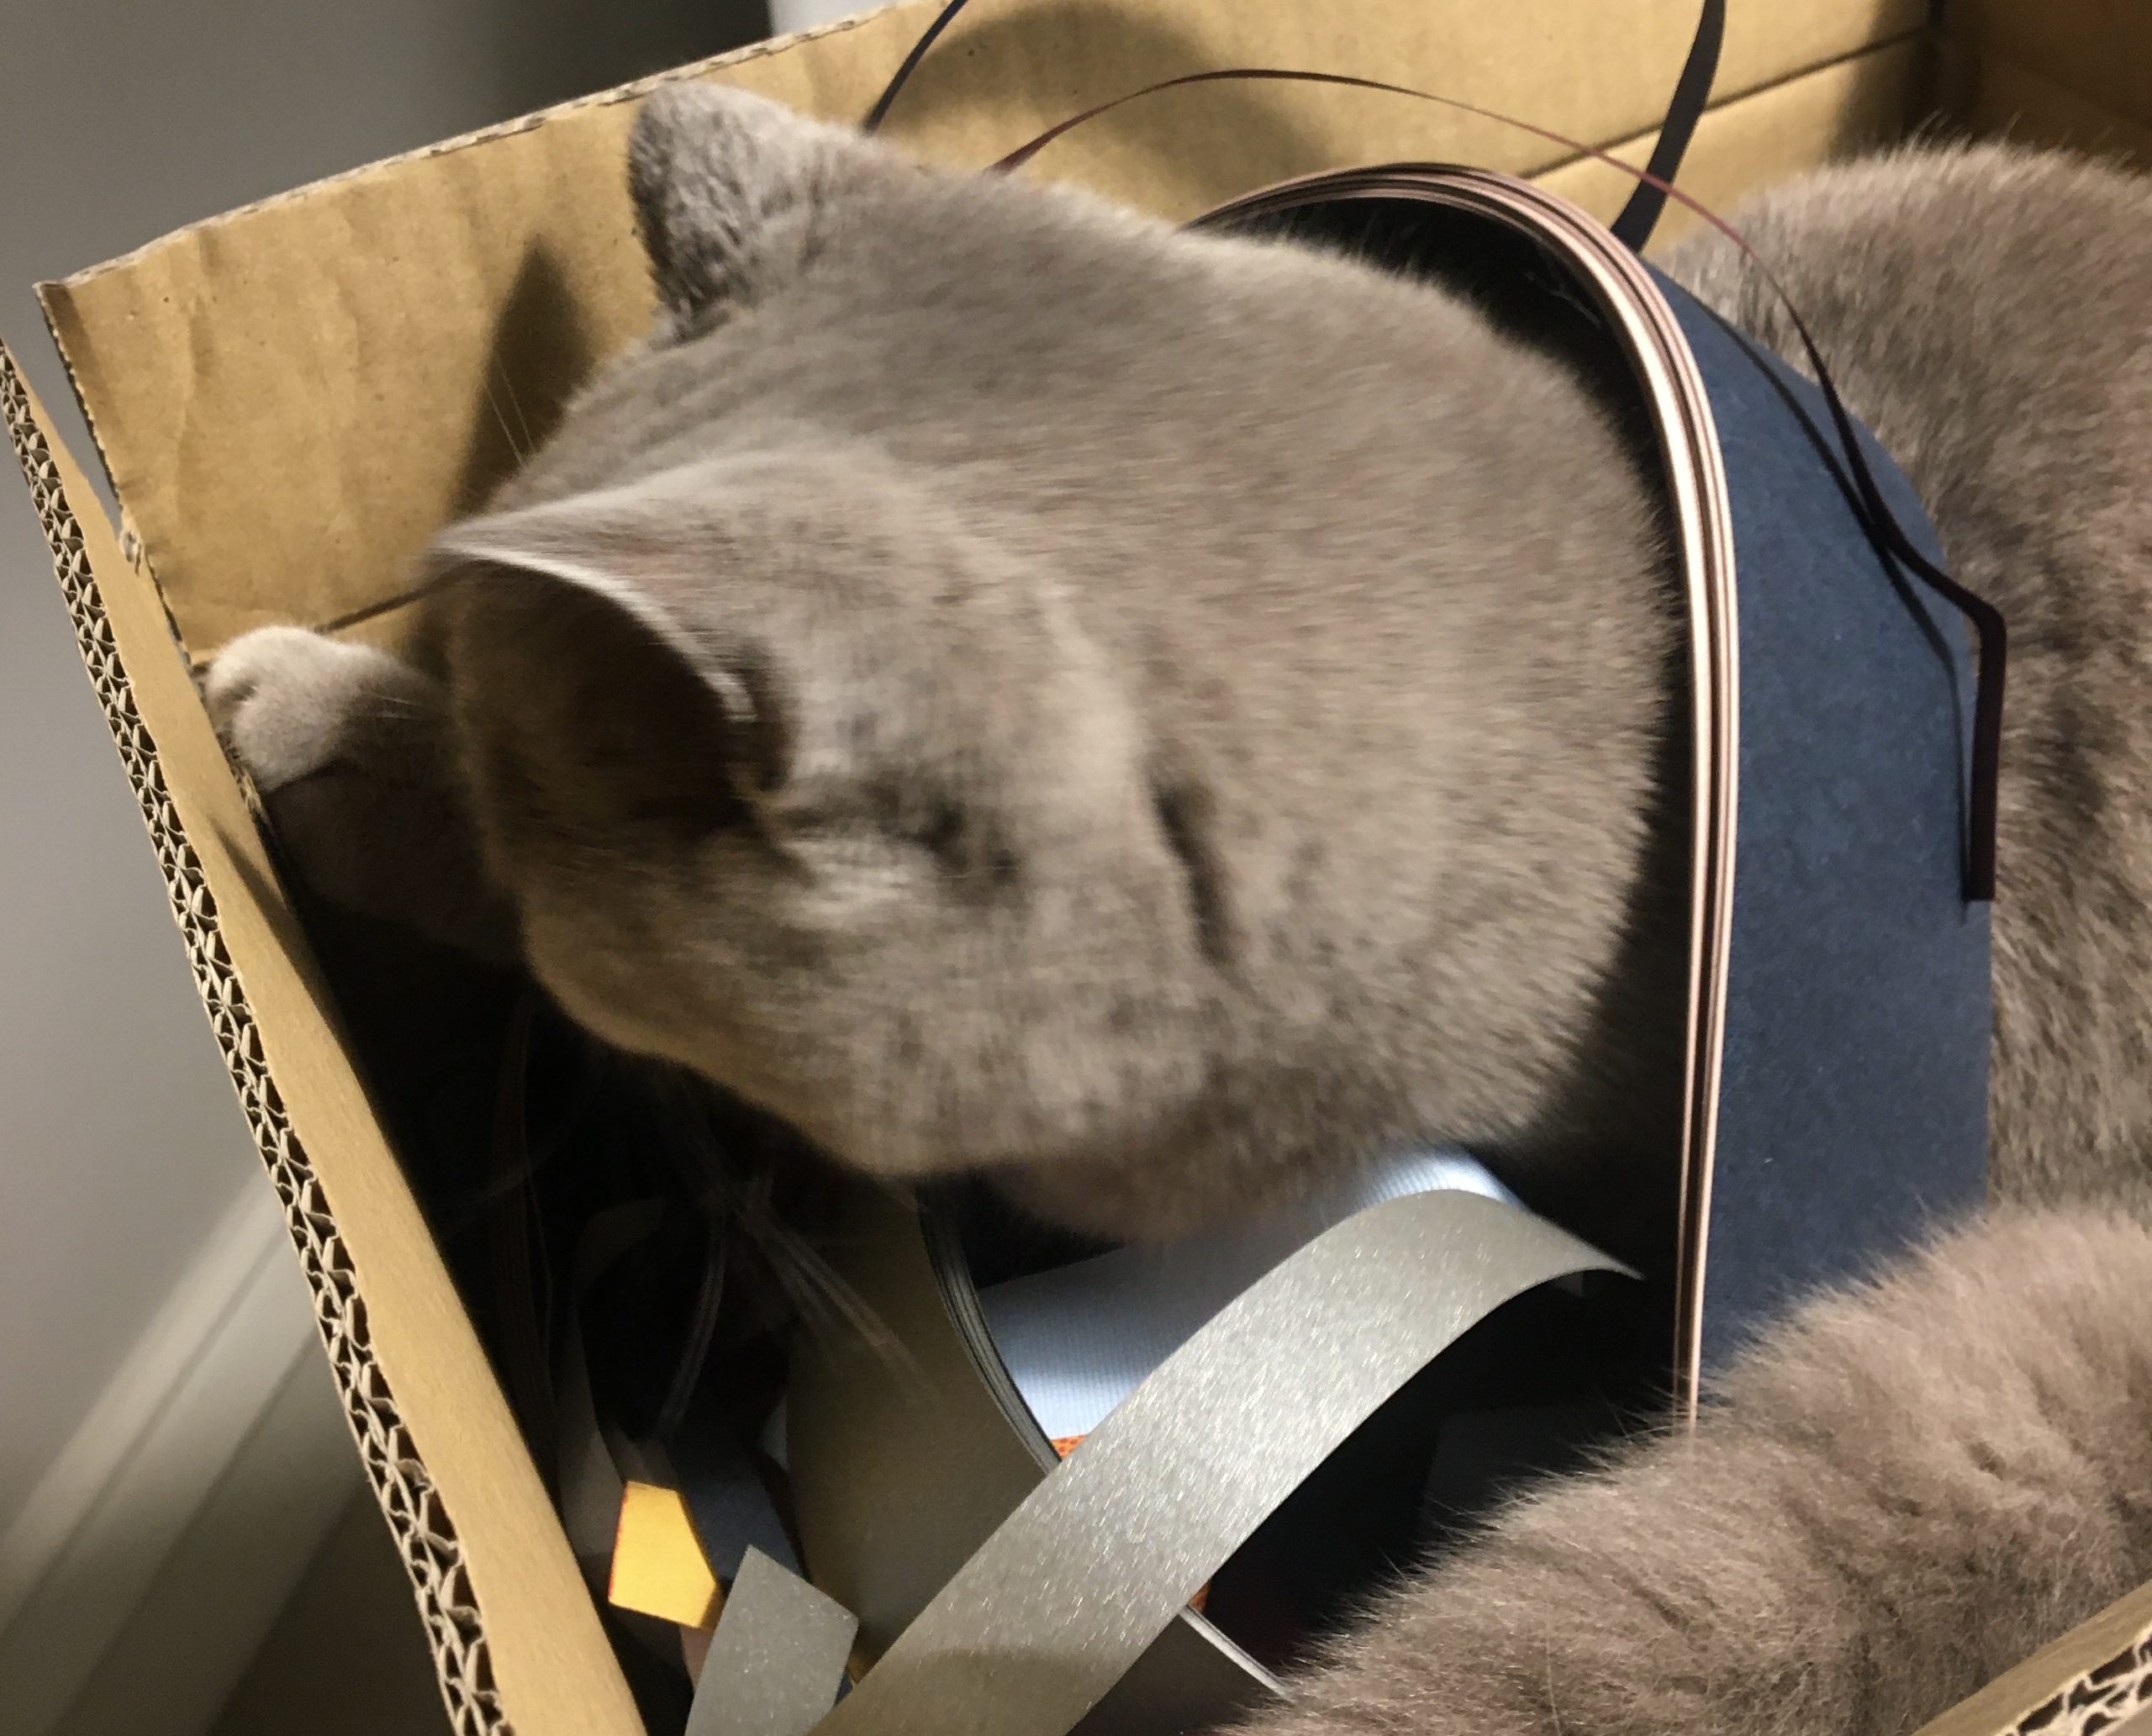 Cat inspecting paper